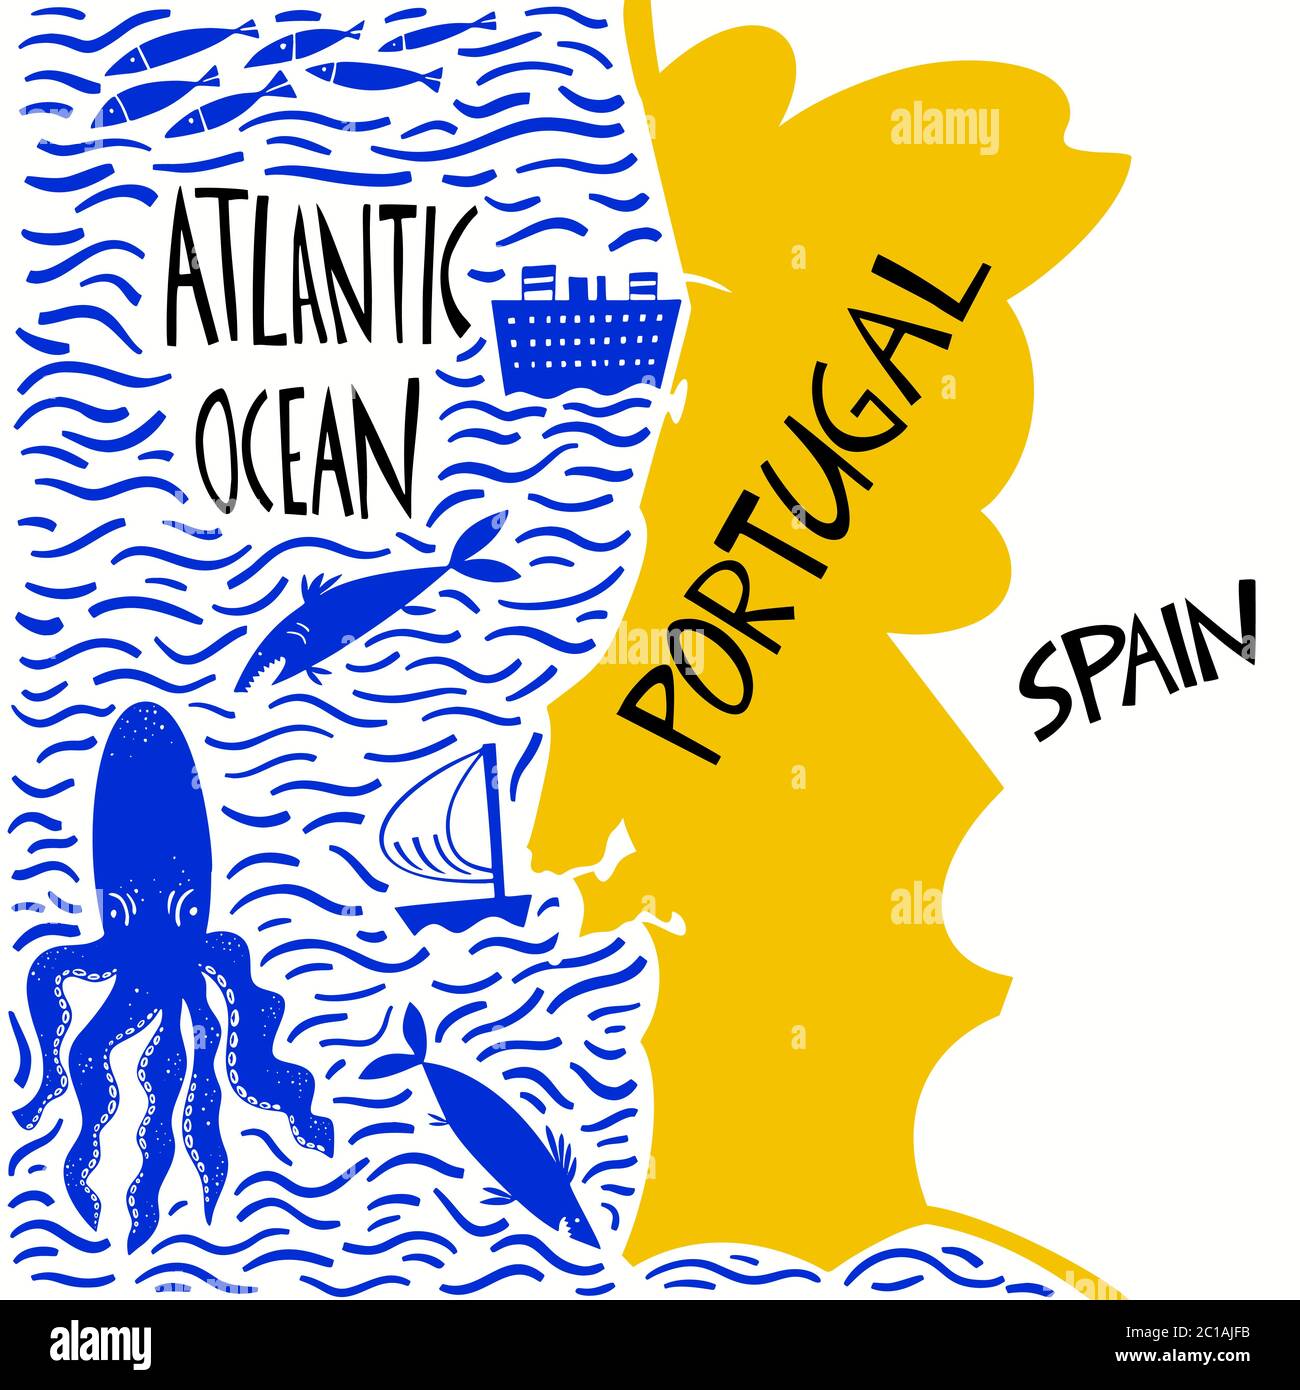 Carte stylisée du Portugal tracée à la main par vecteur. Illustration de voyage de la République portugaise avec noms d'eau. Illustration avec lettrage dessiné à la main. Carte de l'Europe Illustration de Vecteur